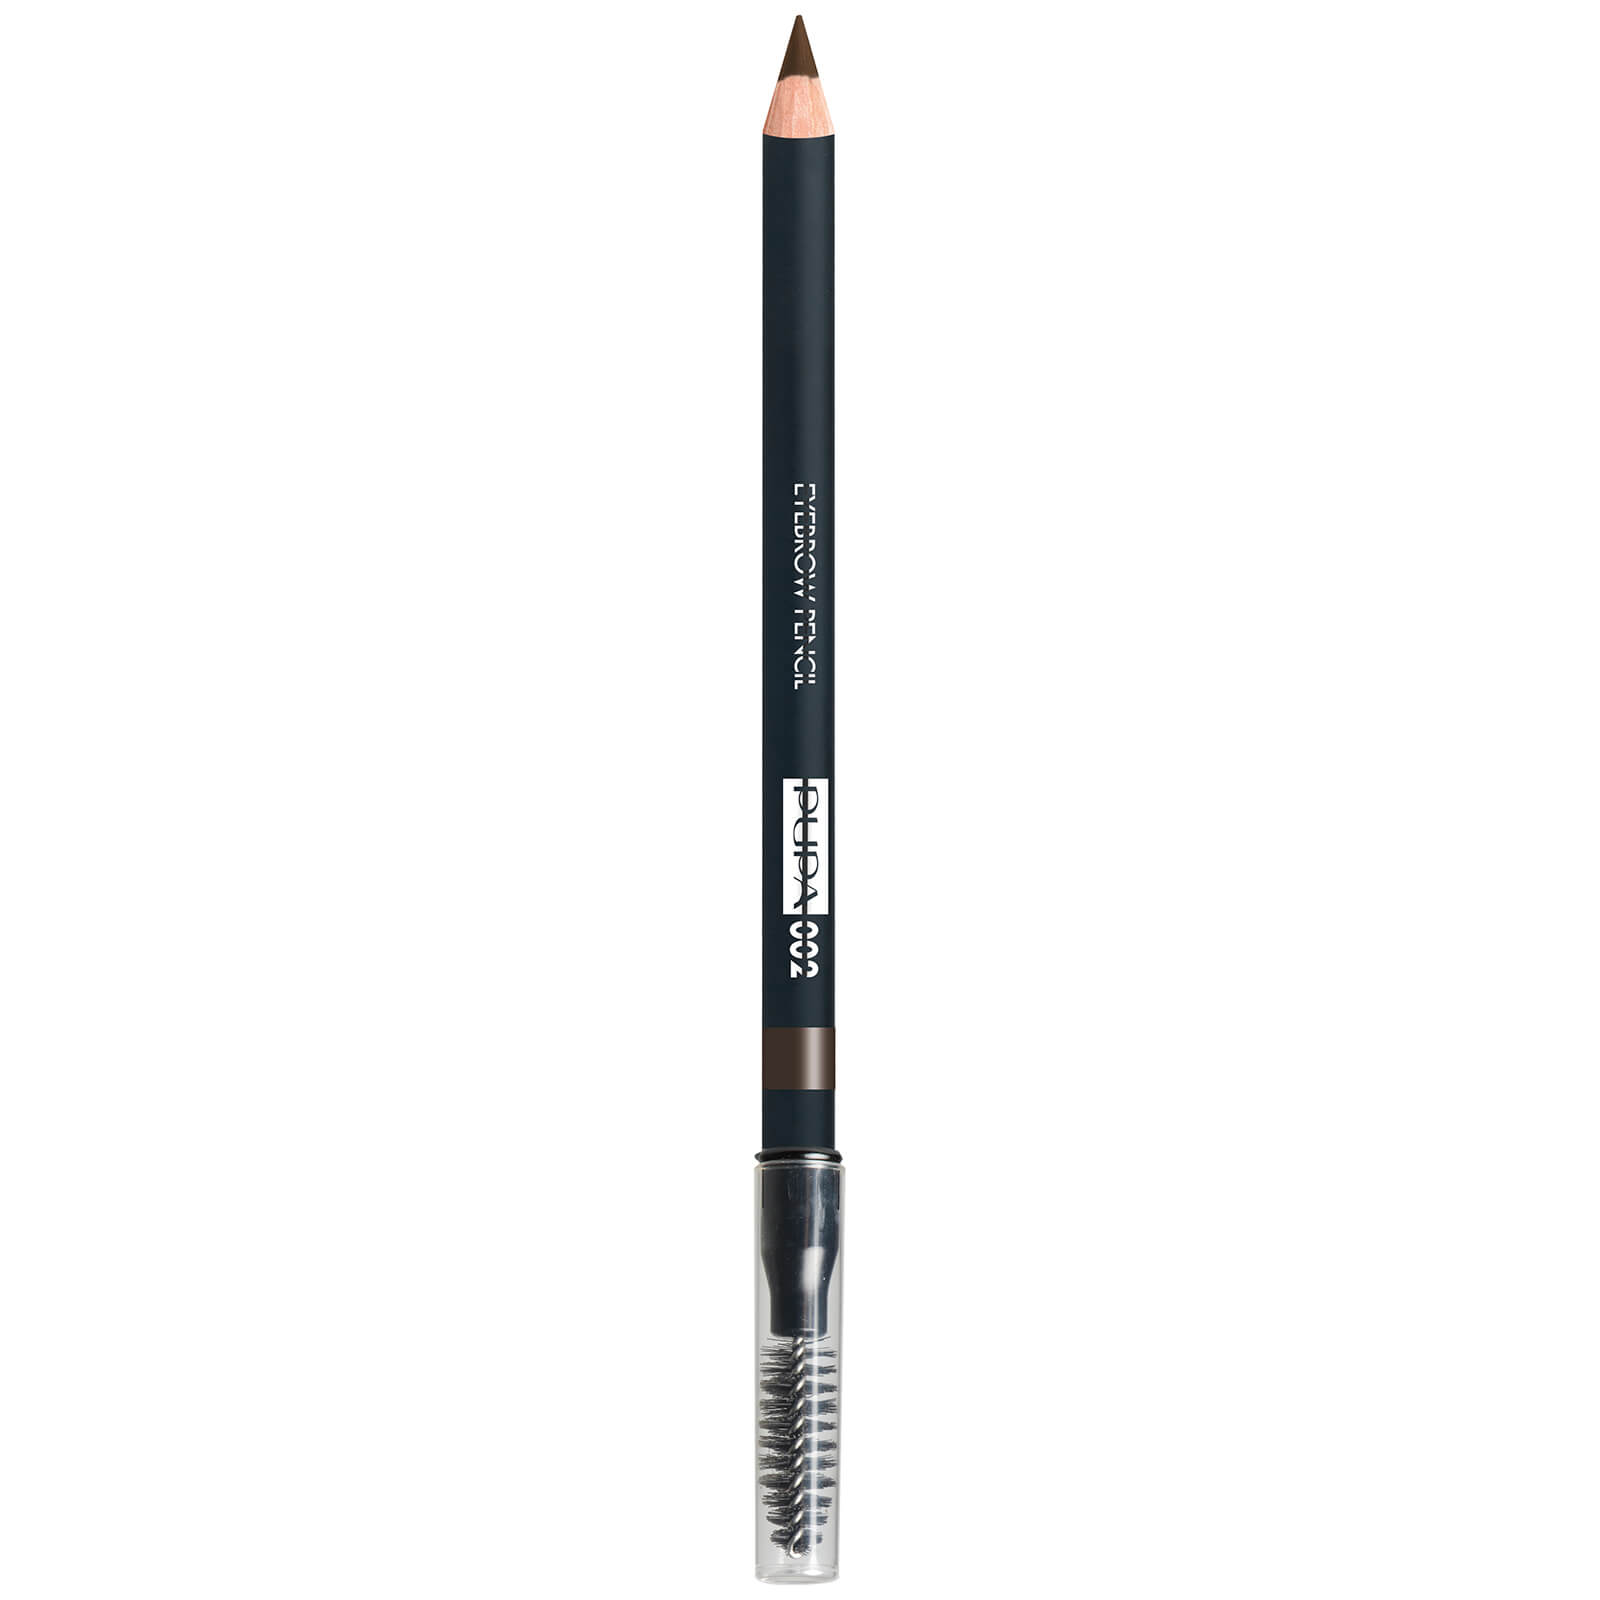 PUPA Eyebrow Long Lasting Waterproof Pencil (Various Shades)